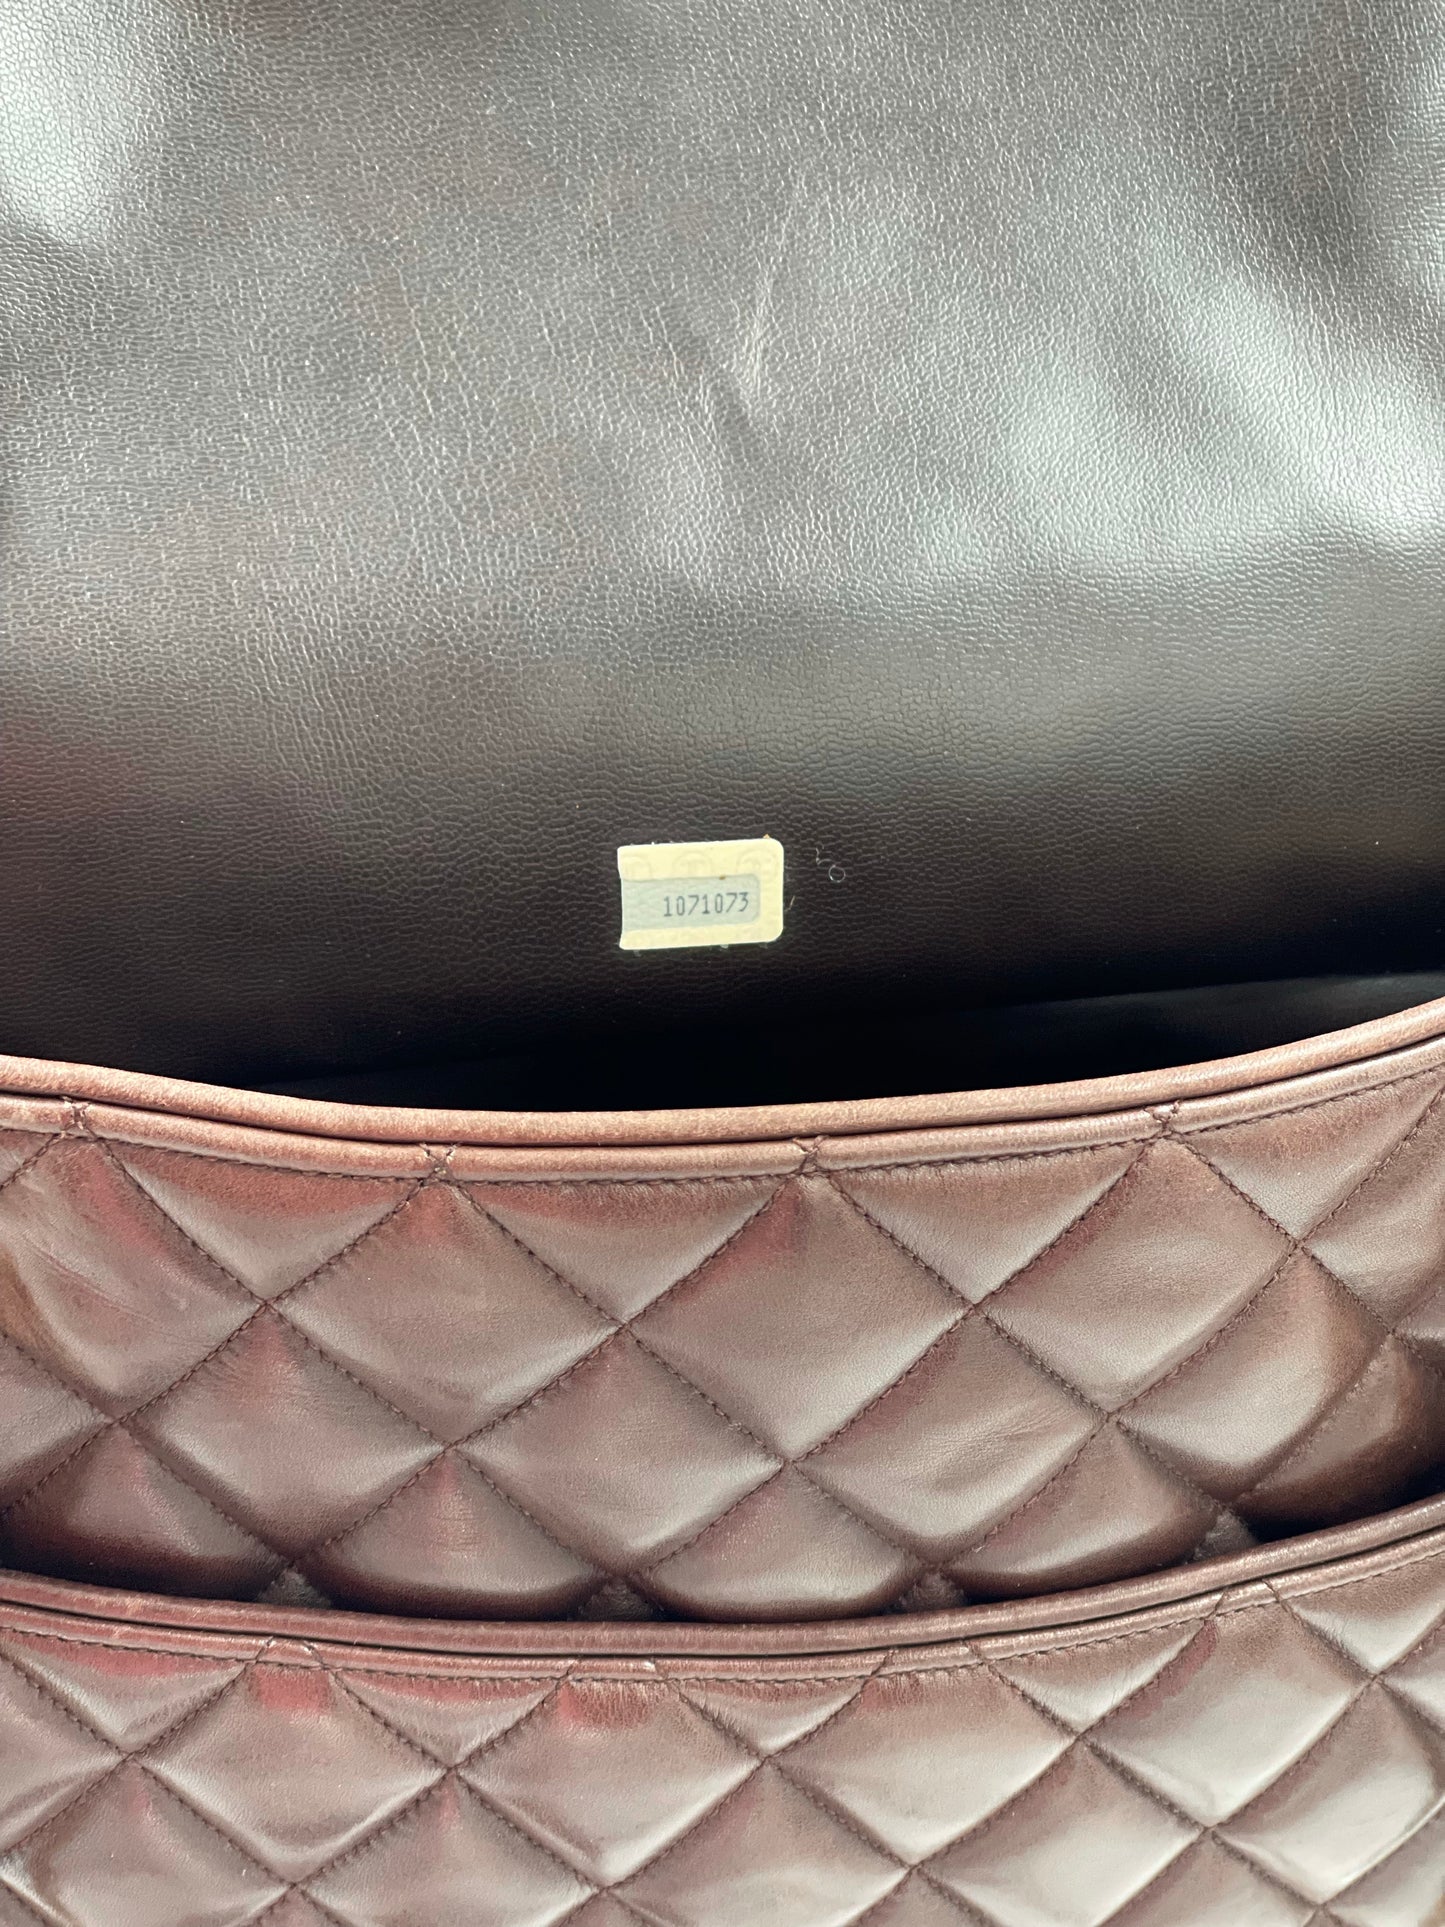 Chanel Vintage Brown Bag